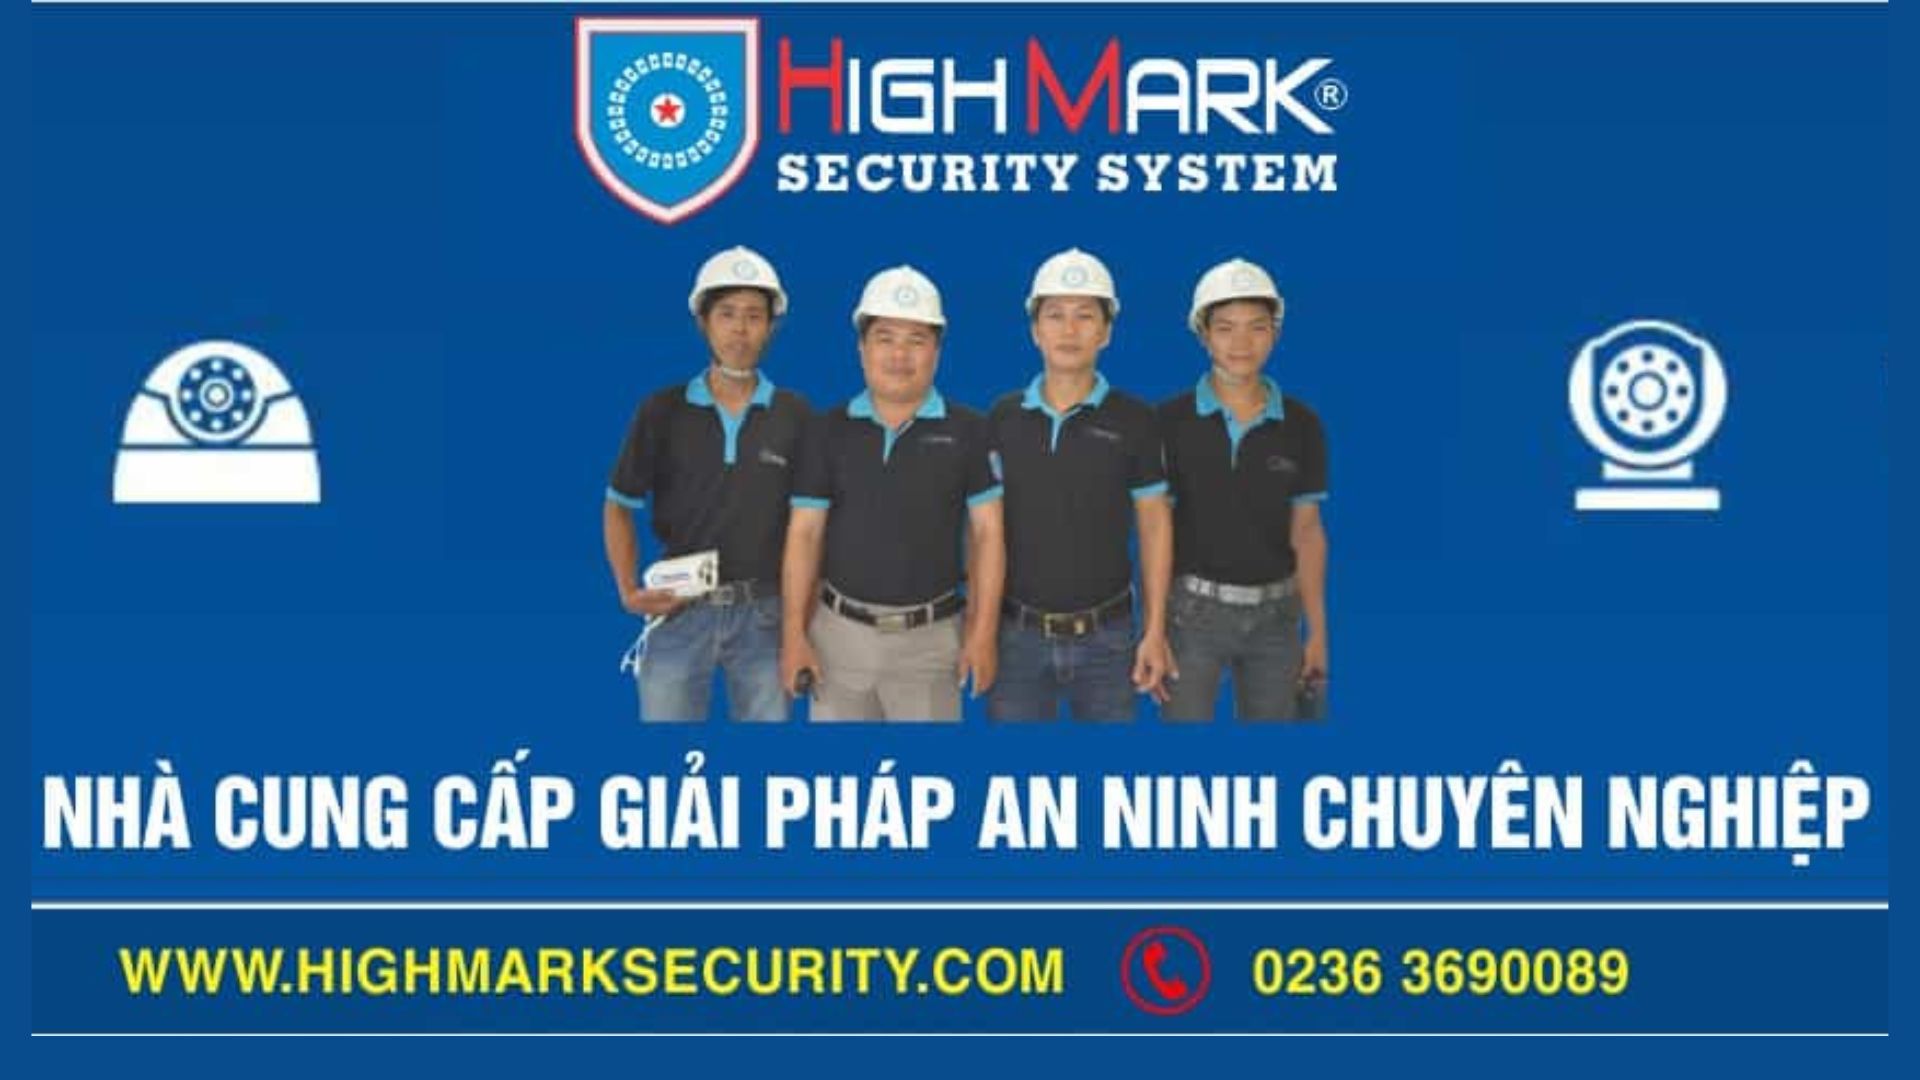 Highmark Security - Chuyên lắp đặt Camera Đà Nẵng đáng tin cậy